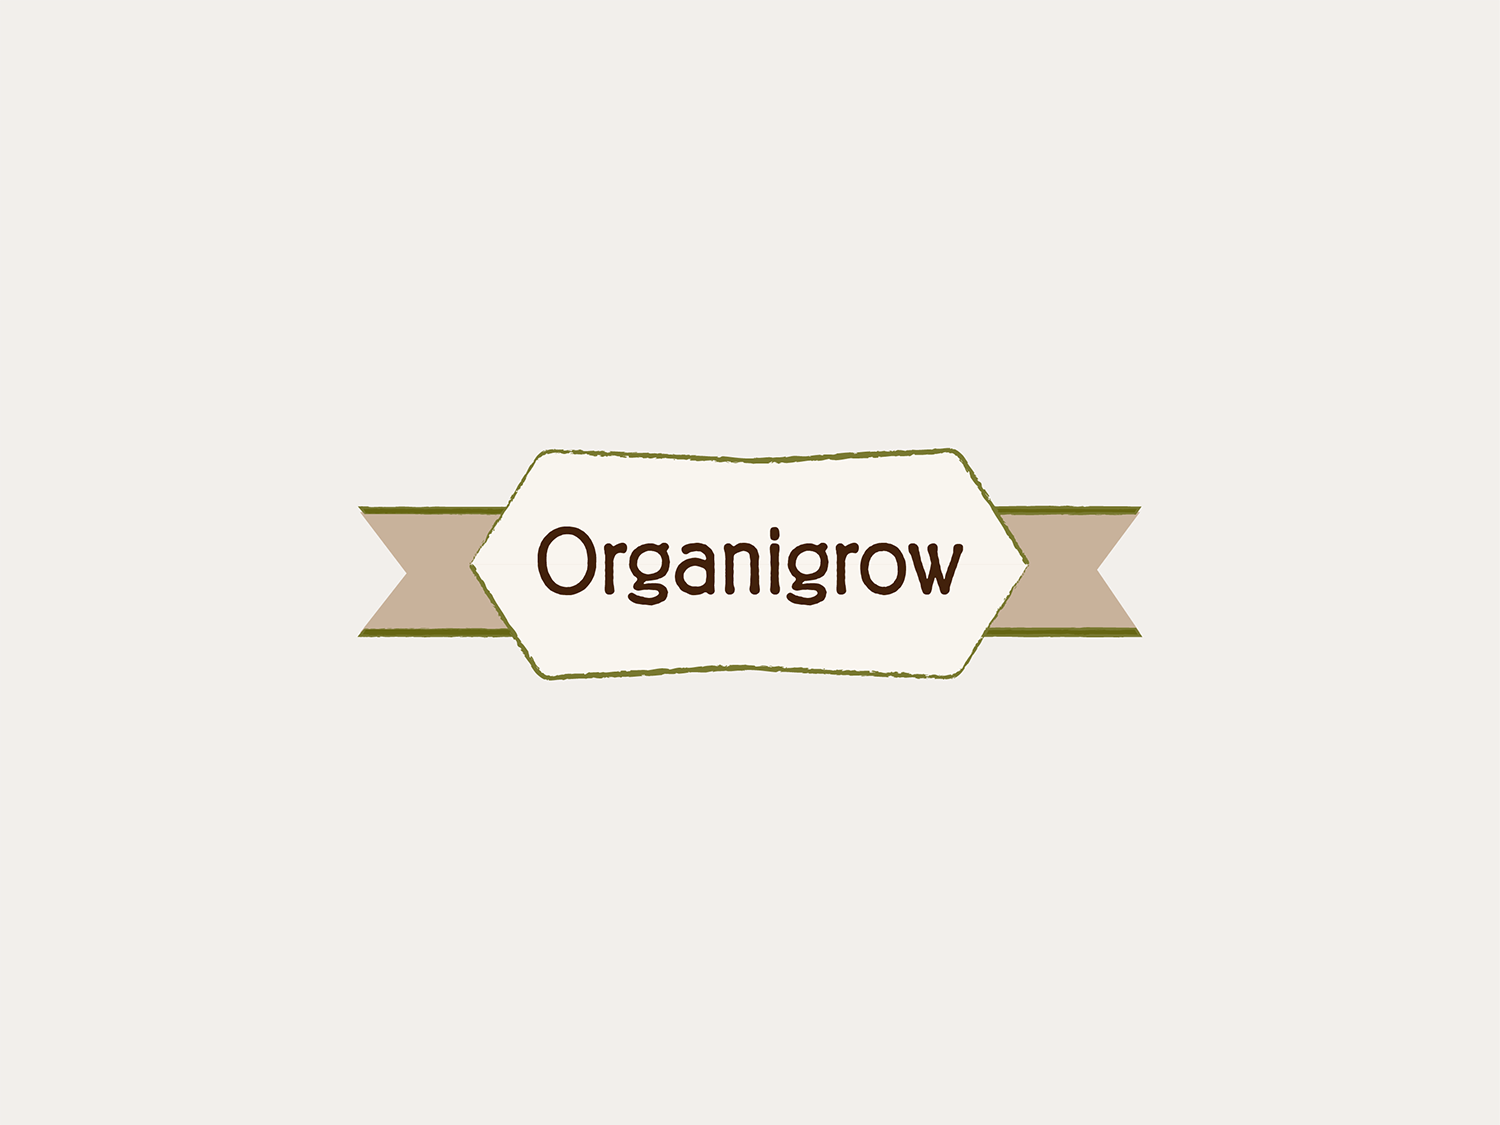 #2 Organigrow